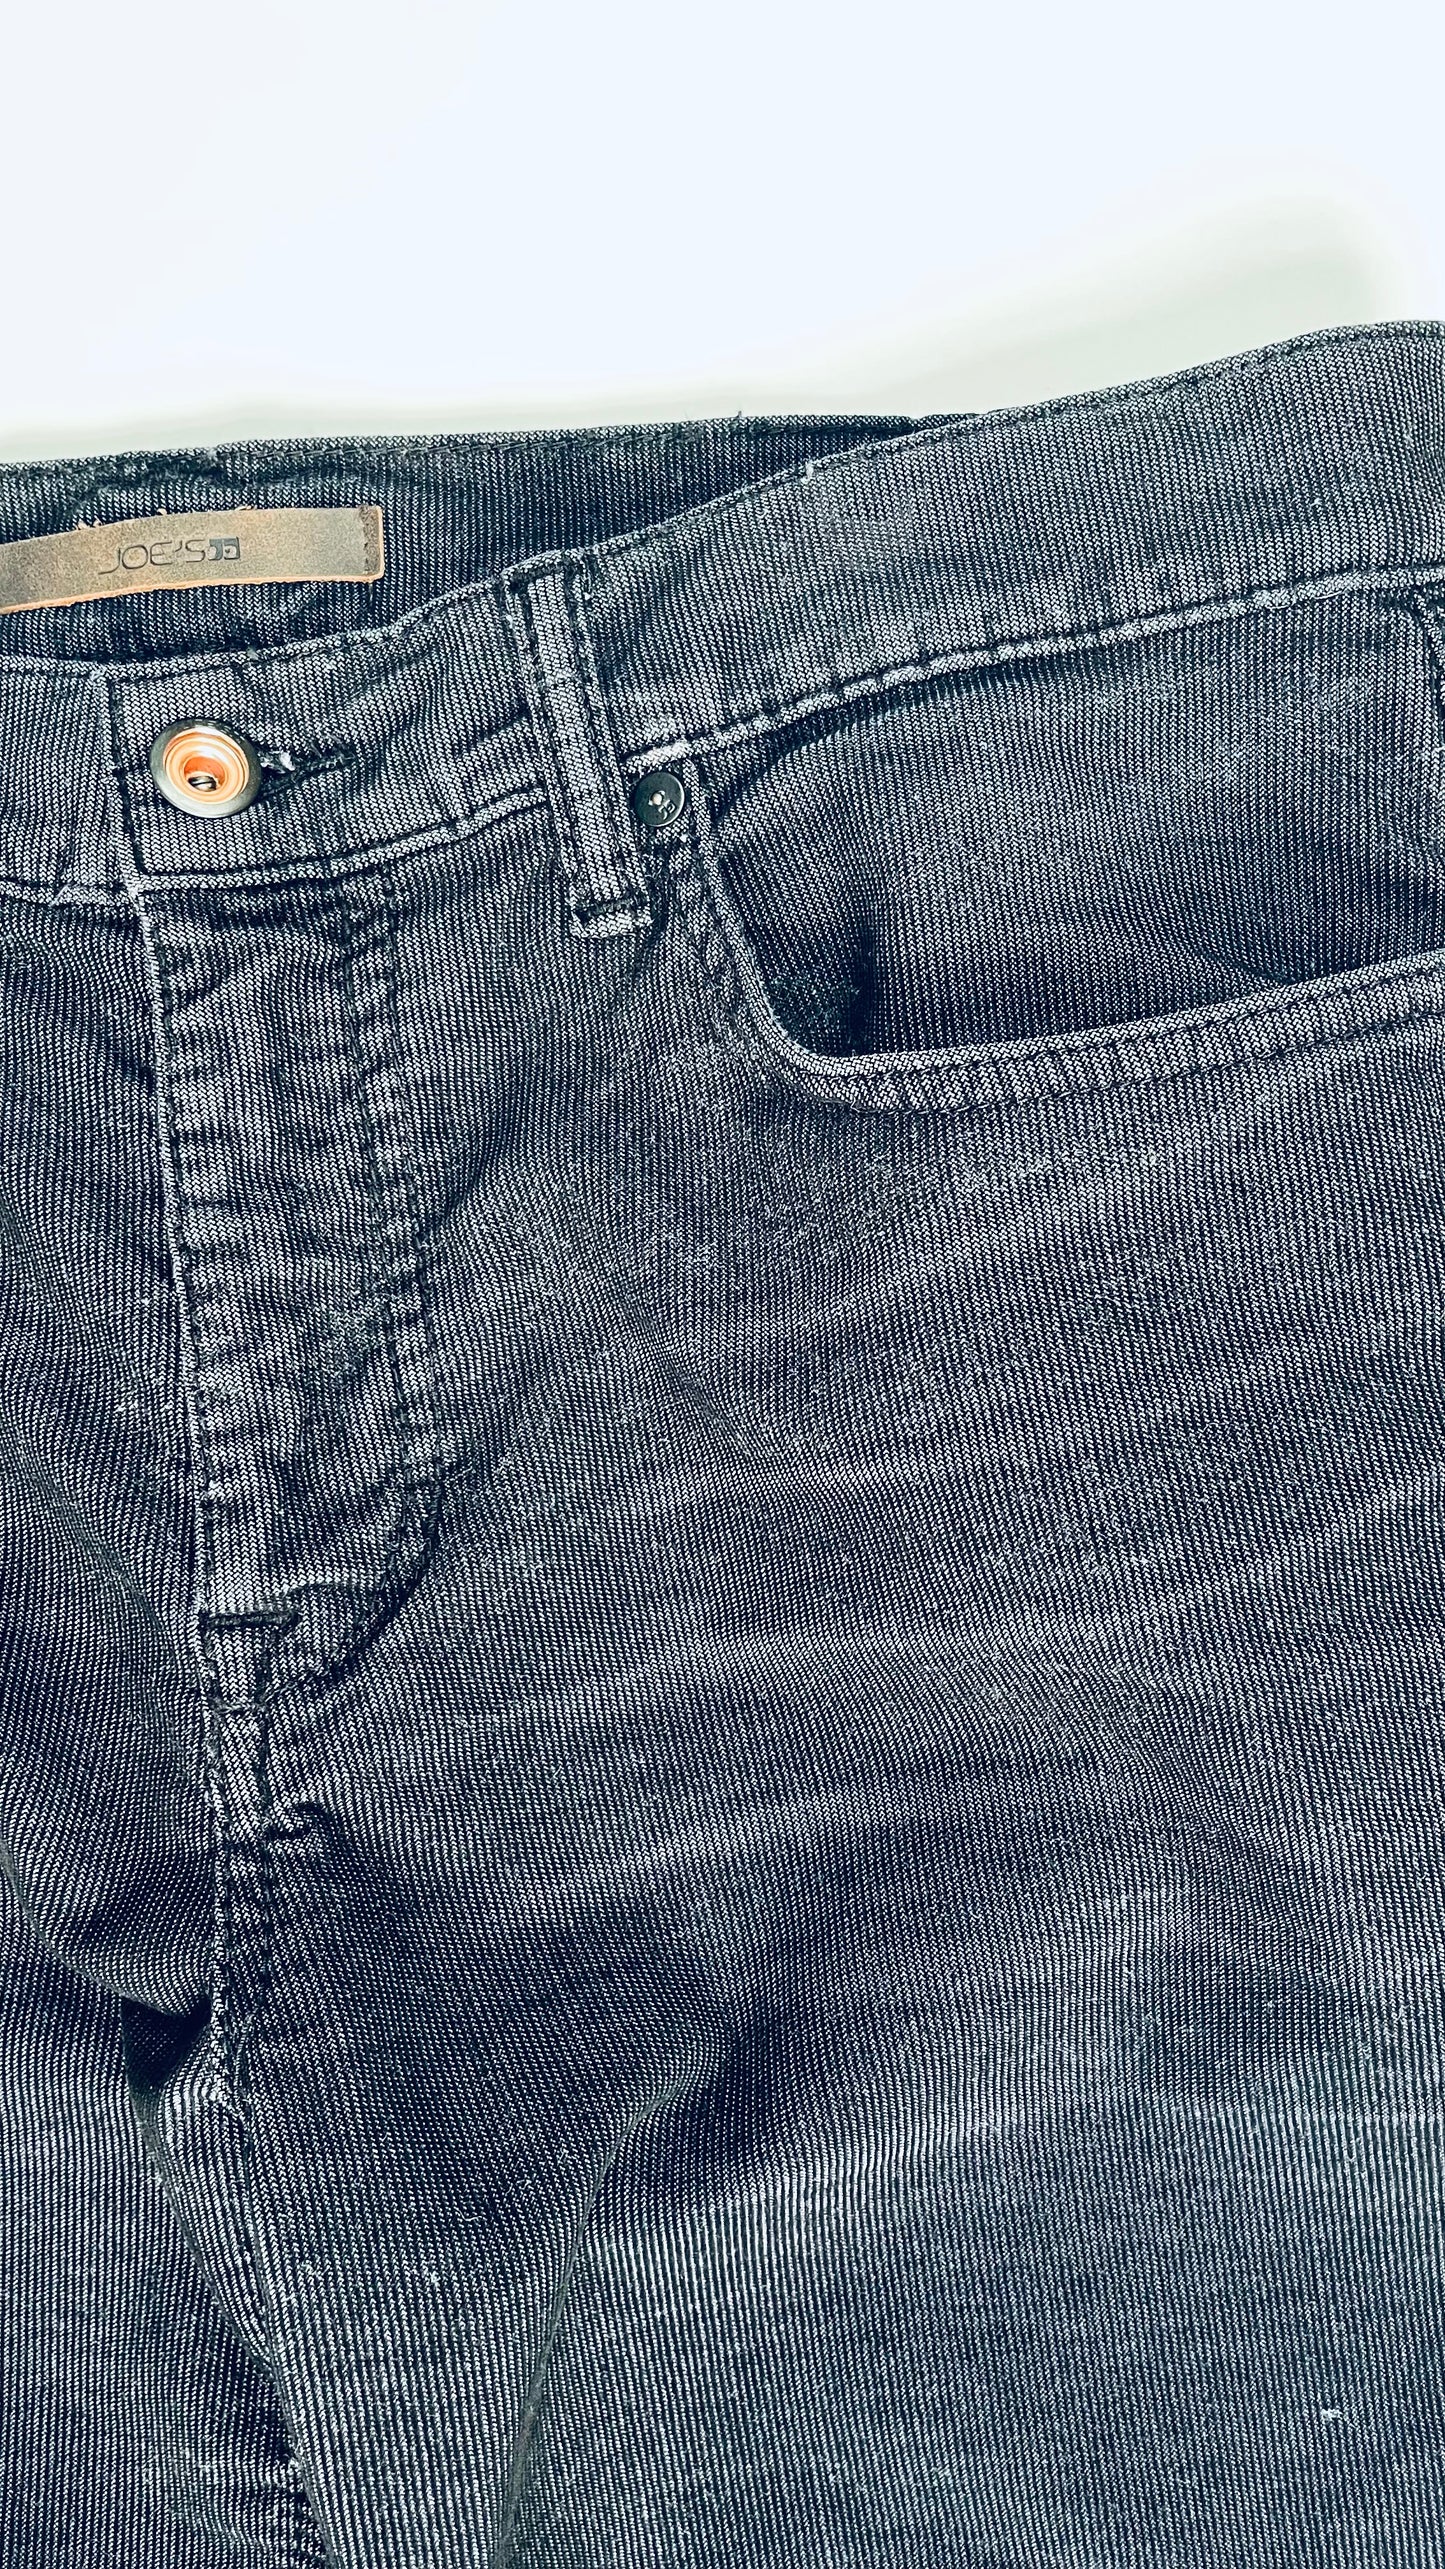 Vintage Y2K Joe's Jeans mid rise charcoal corduroy pants - Size 32